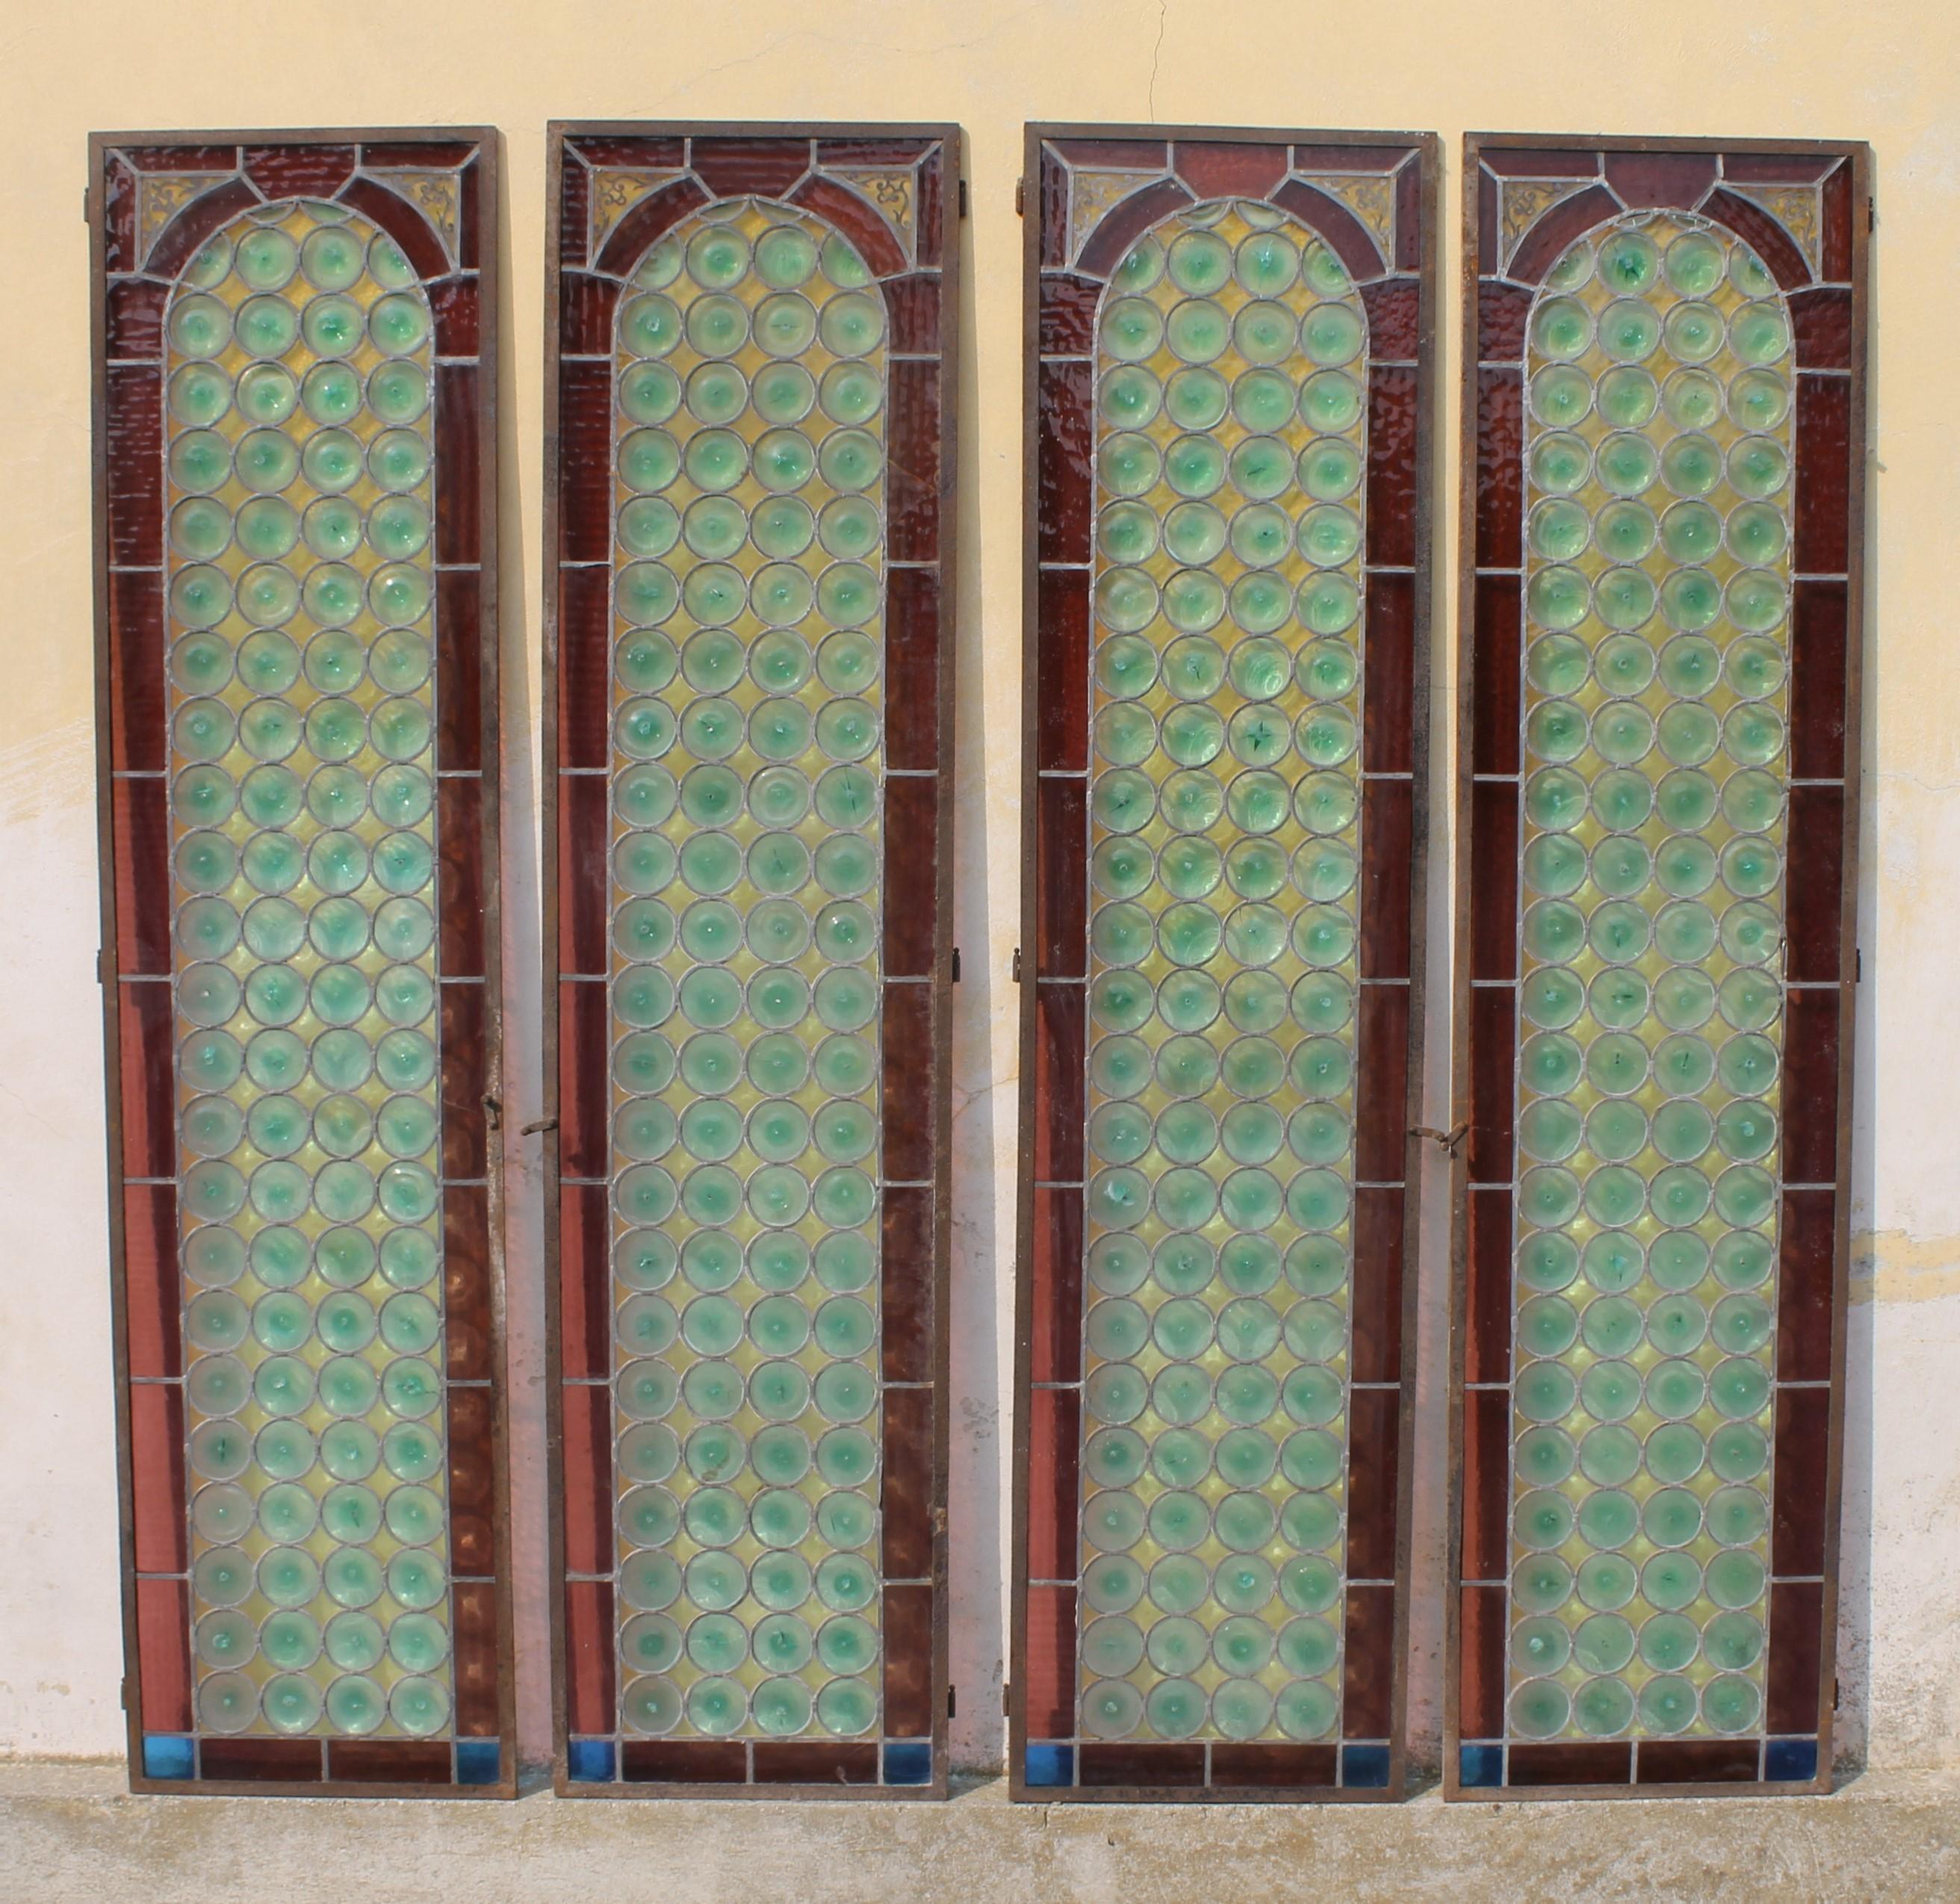 Satz von vier italienischen Glasfenstertüren, Italien um 1890

Maße: Jede Tür/Platte misst Höhe cm. 210,5, Breite cm. 51 und knapp cm. 2 dick.